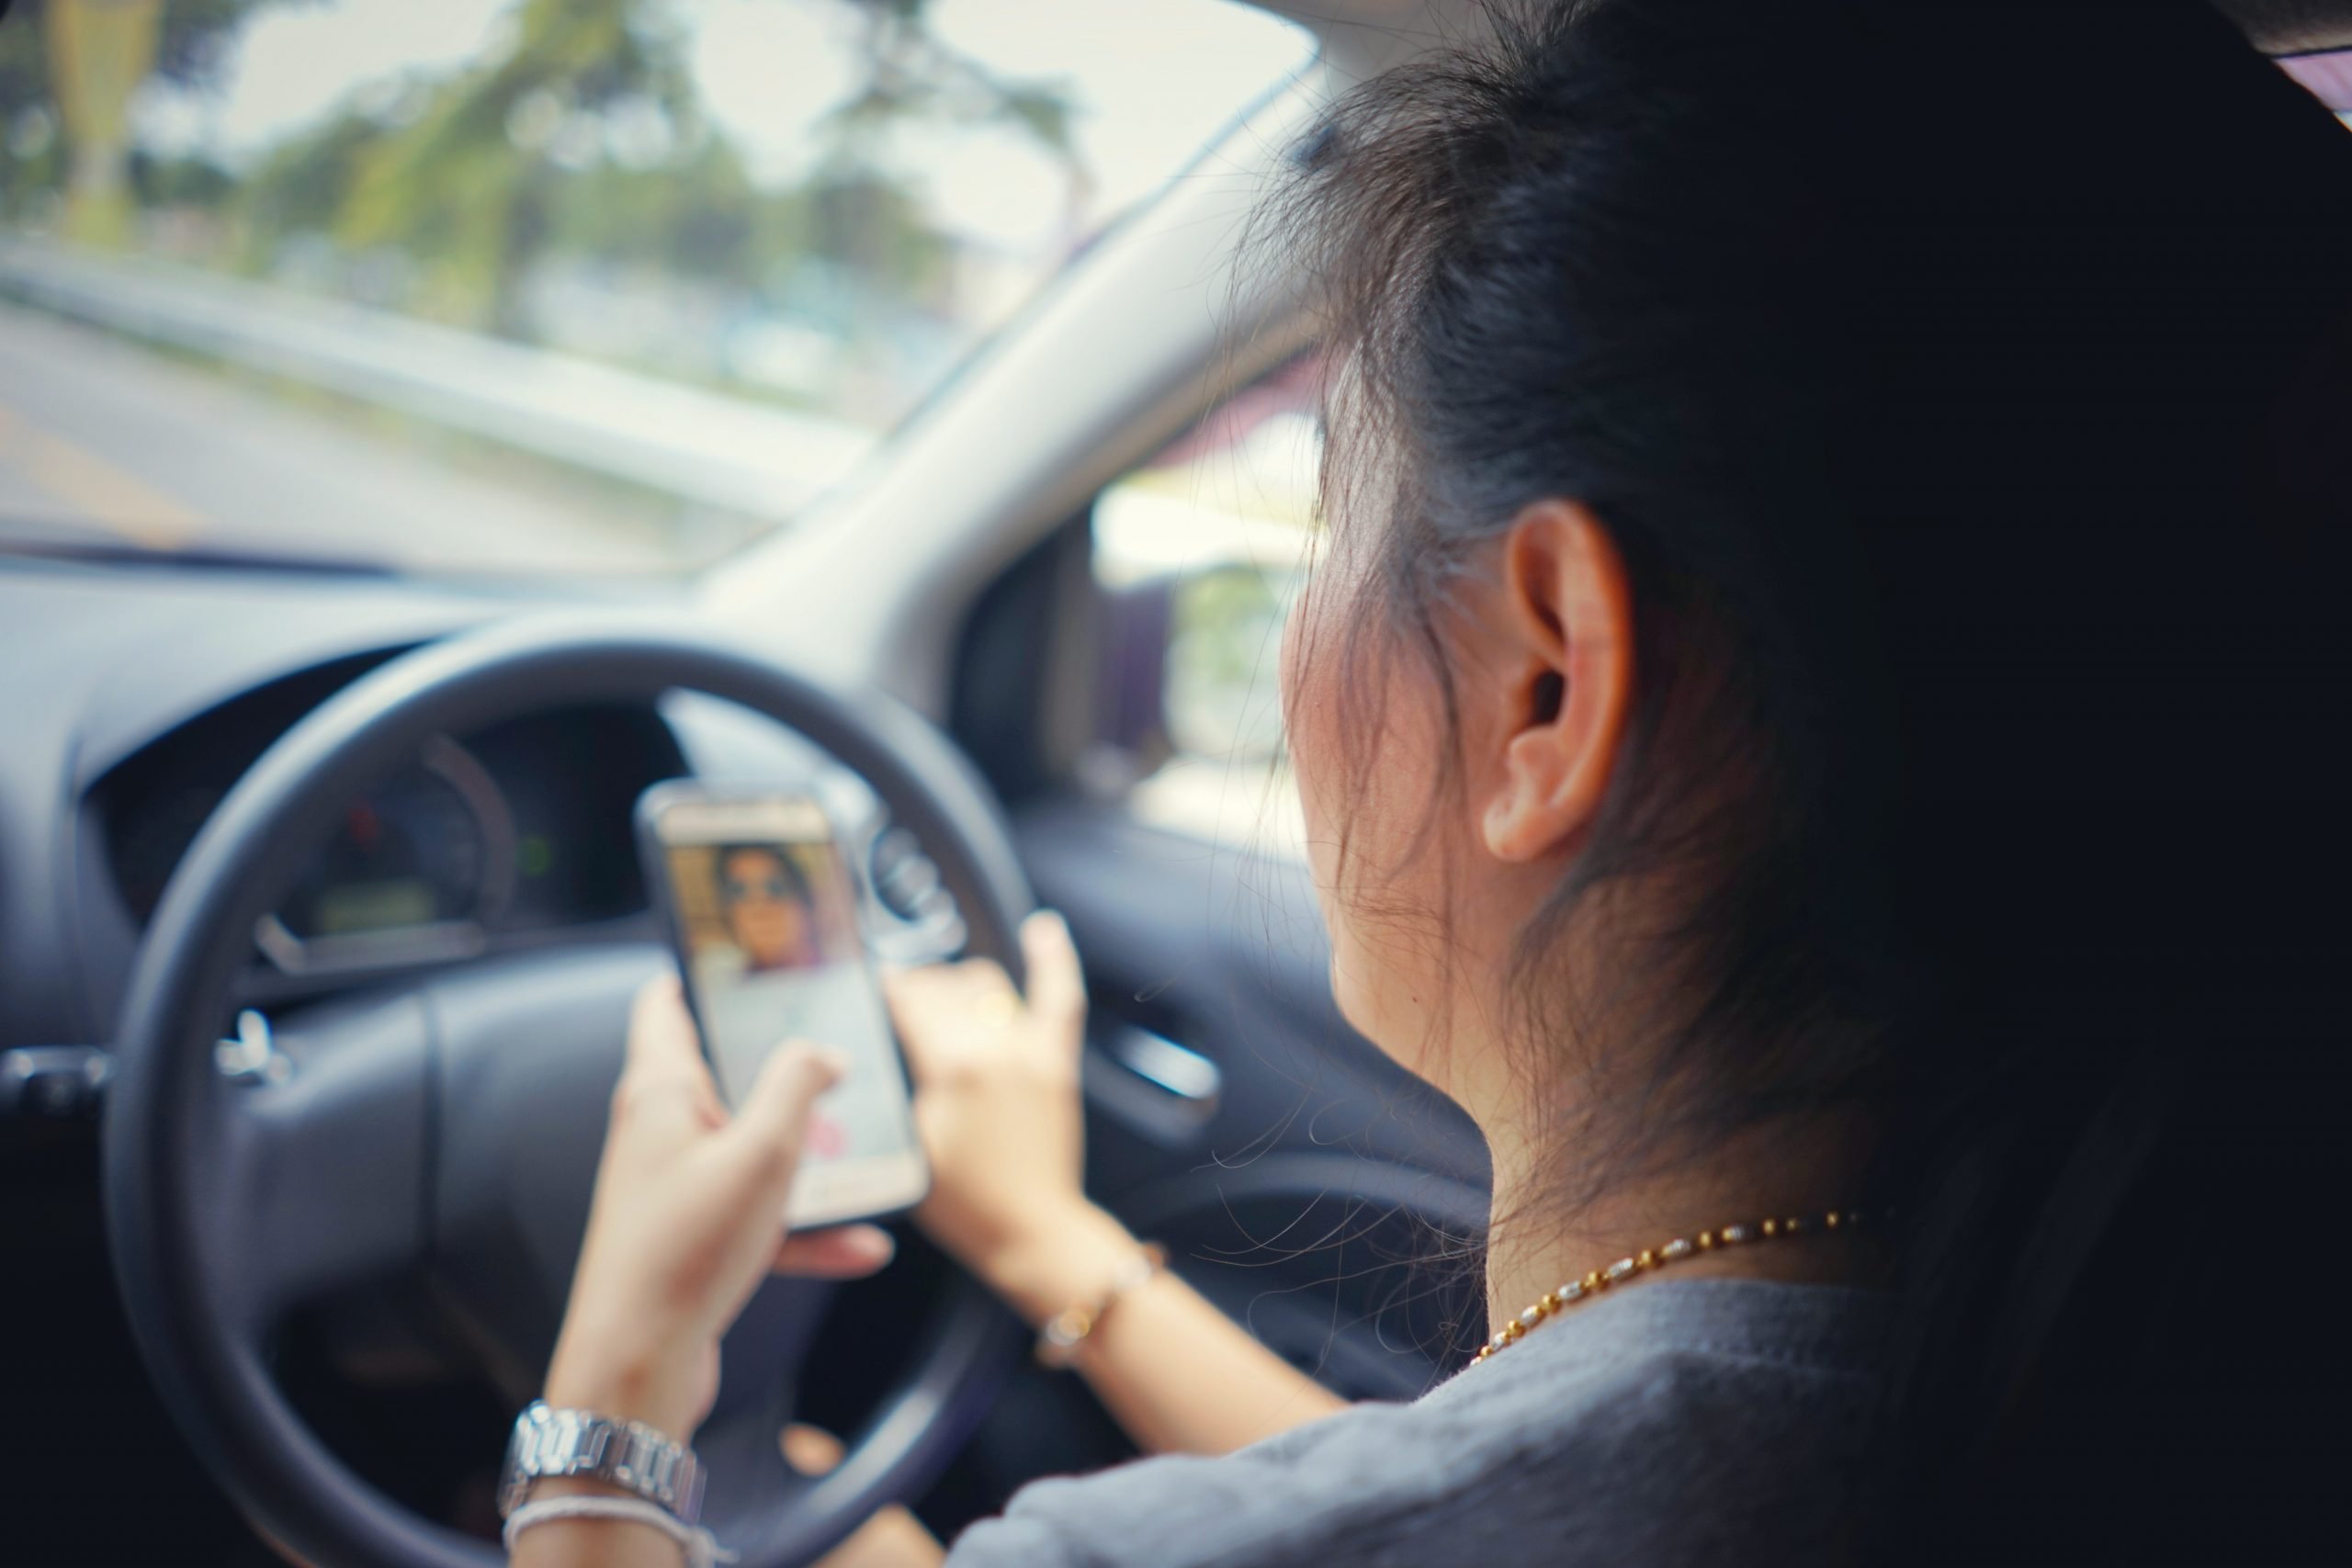 Veel bekeuringen voor smartphone gebruik tijdens rijden